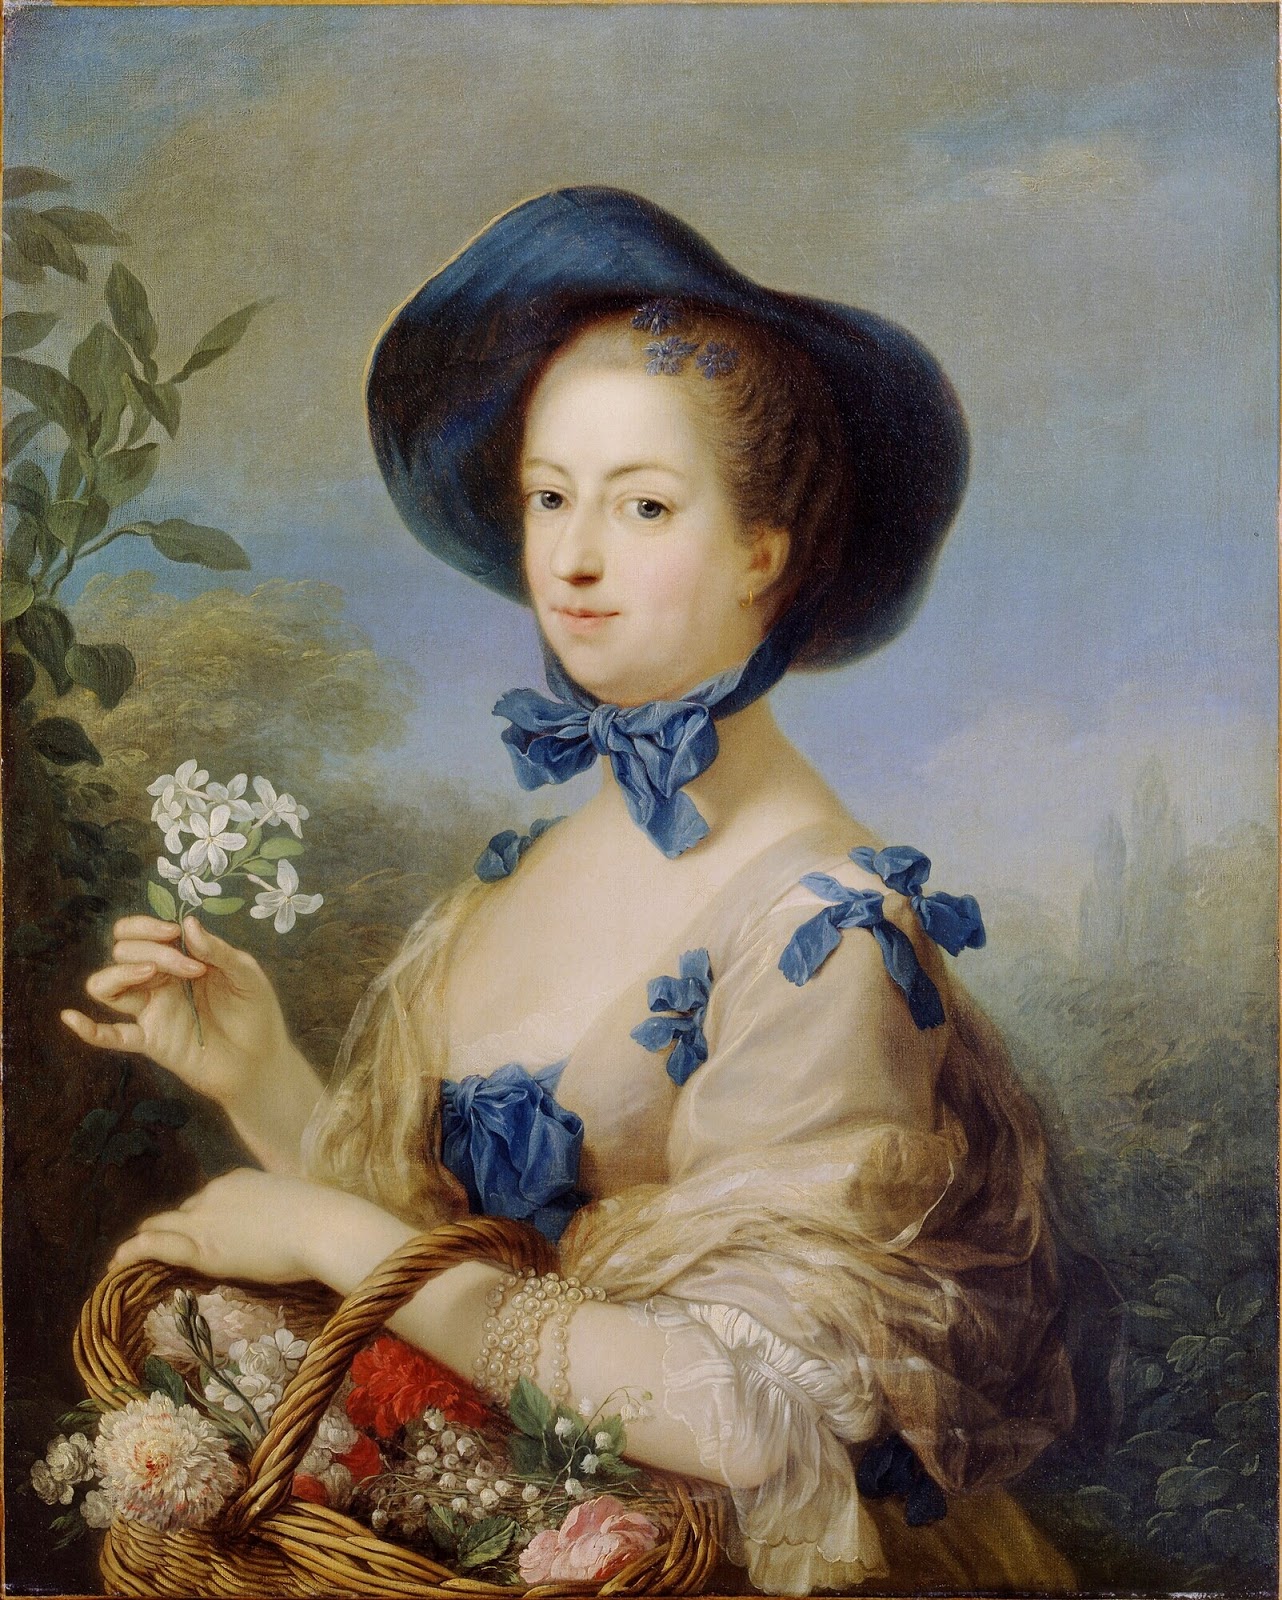 Paintings by Carle van Loo (1705-1765)